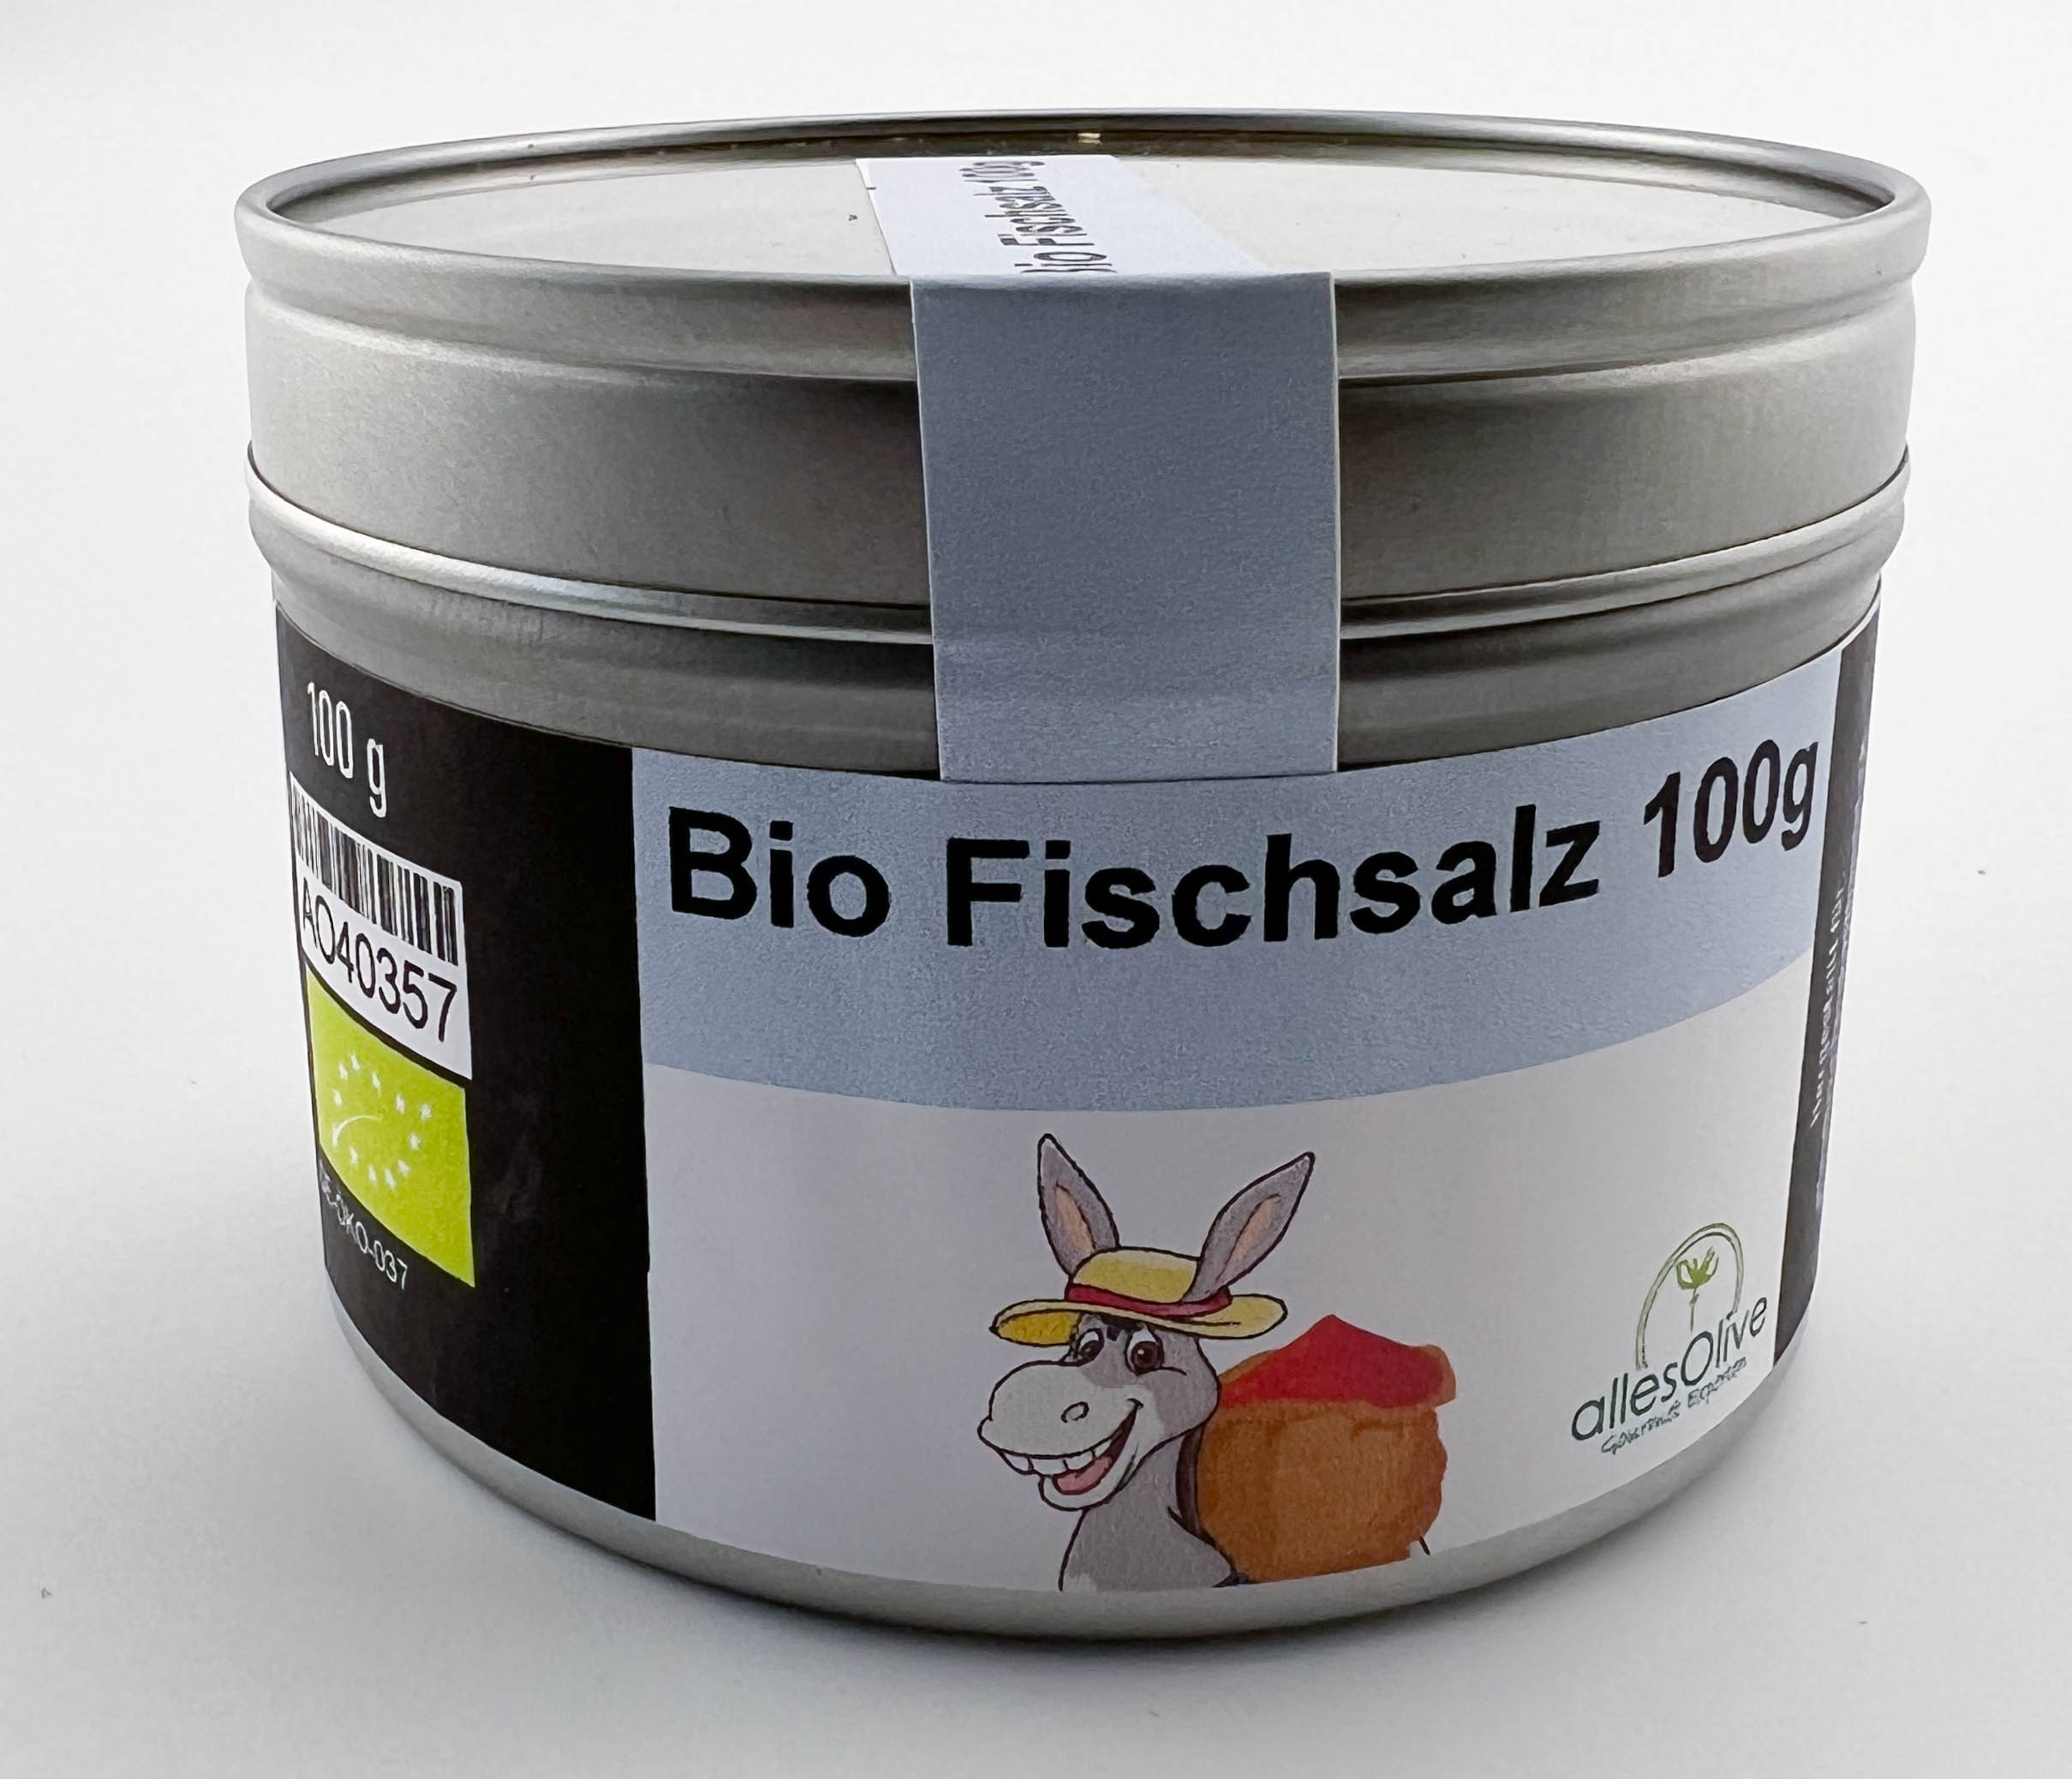 Bio Fischsalz 100g